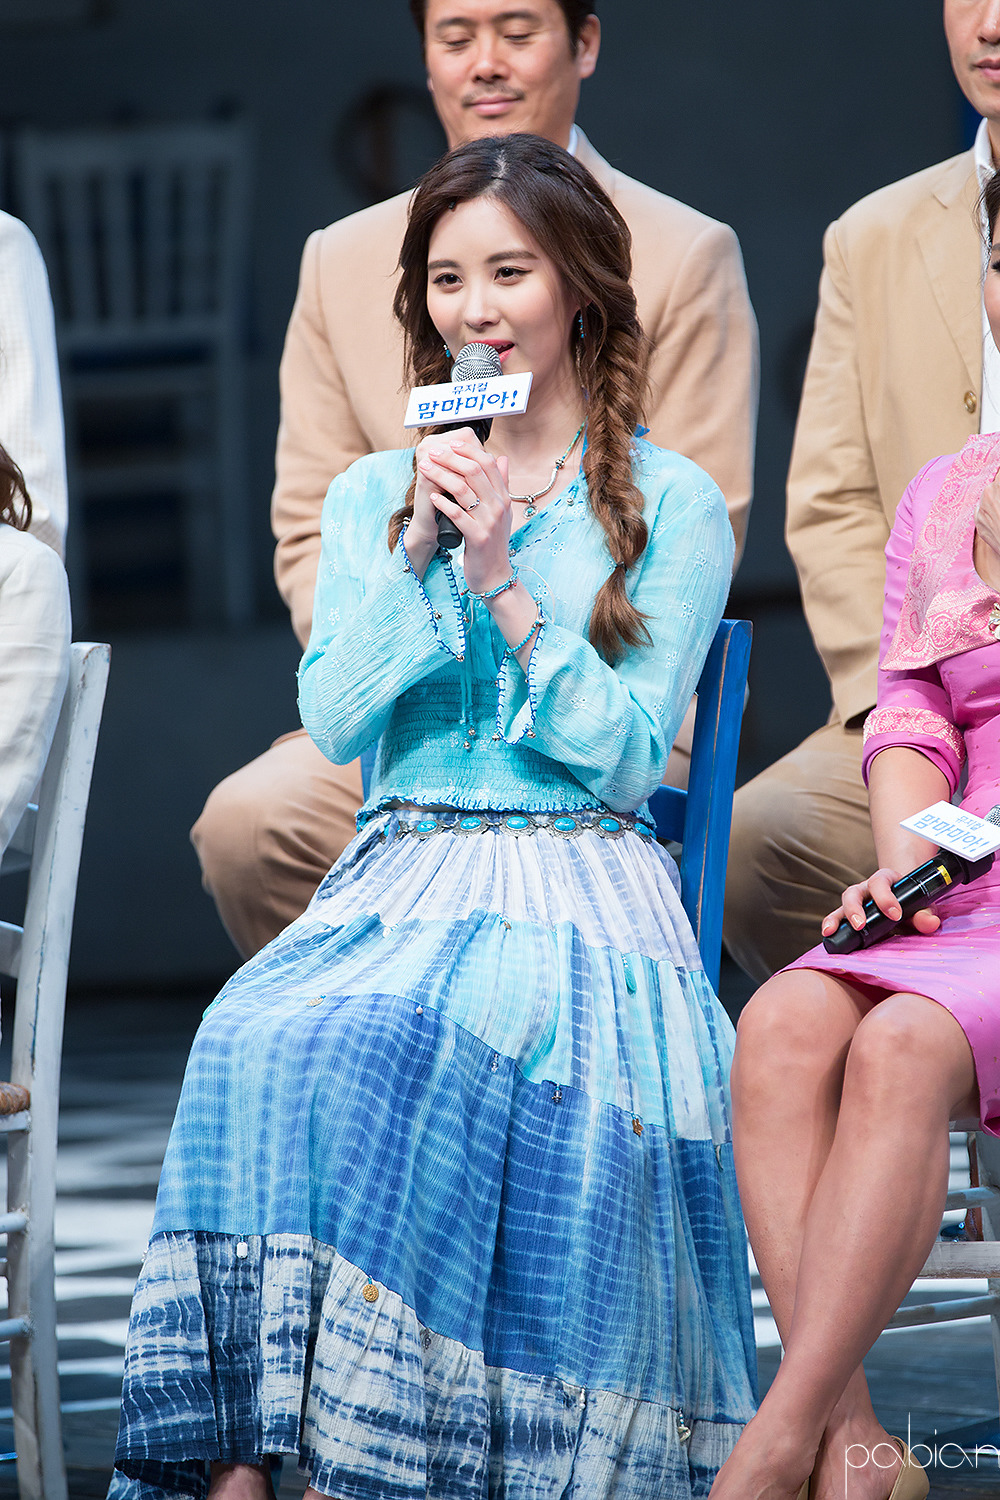 [OTHER][08-12-2015]SeoHyun tham dự vở nhạc kịch mới mang tên "Mamma Mia!" - Page 3 214CD93D56CD380C2D9902